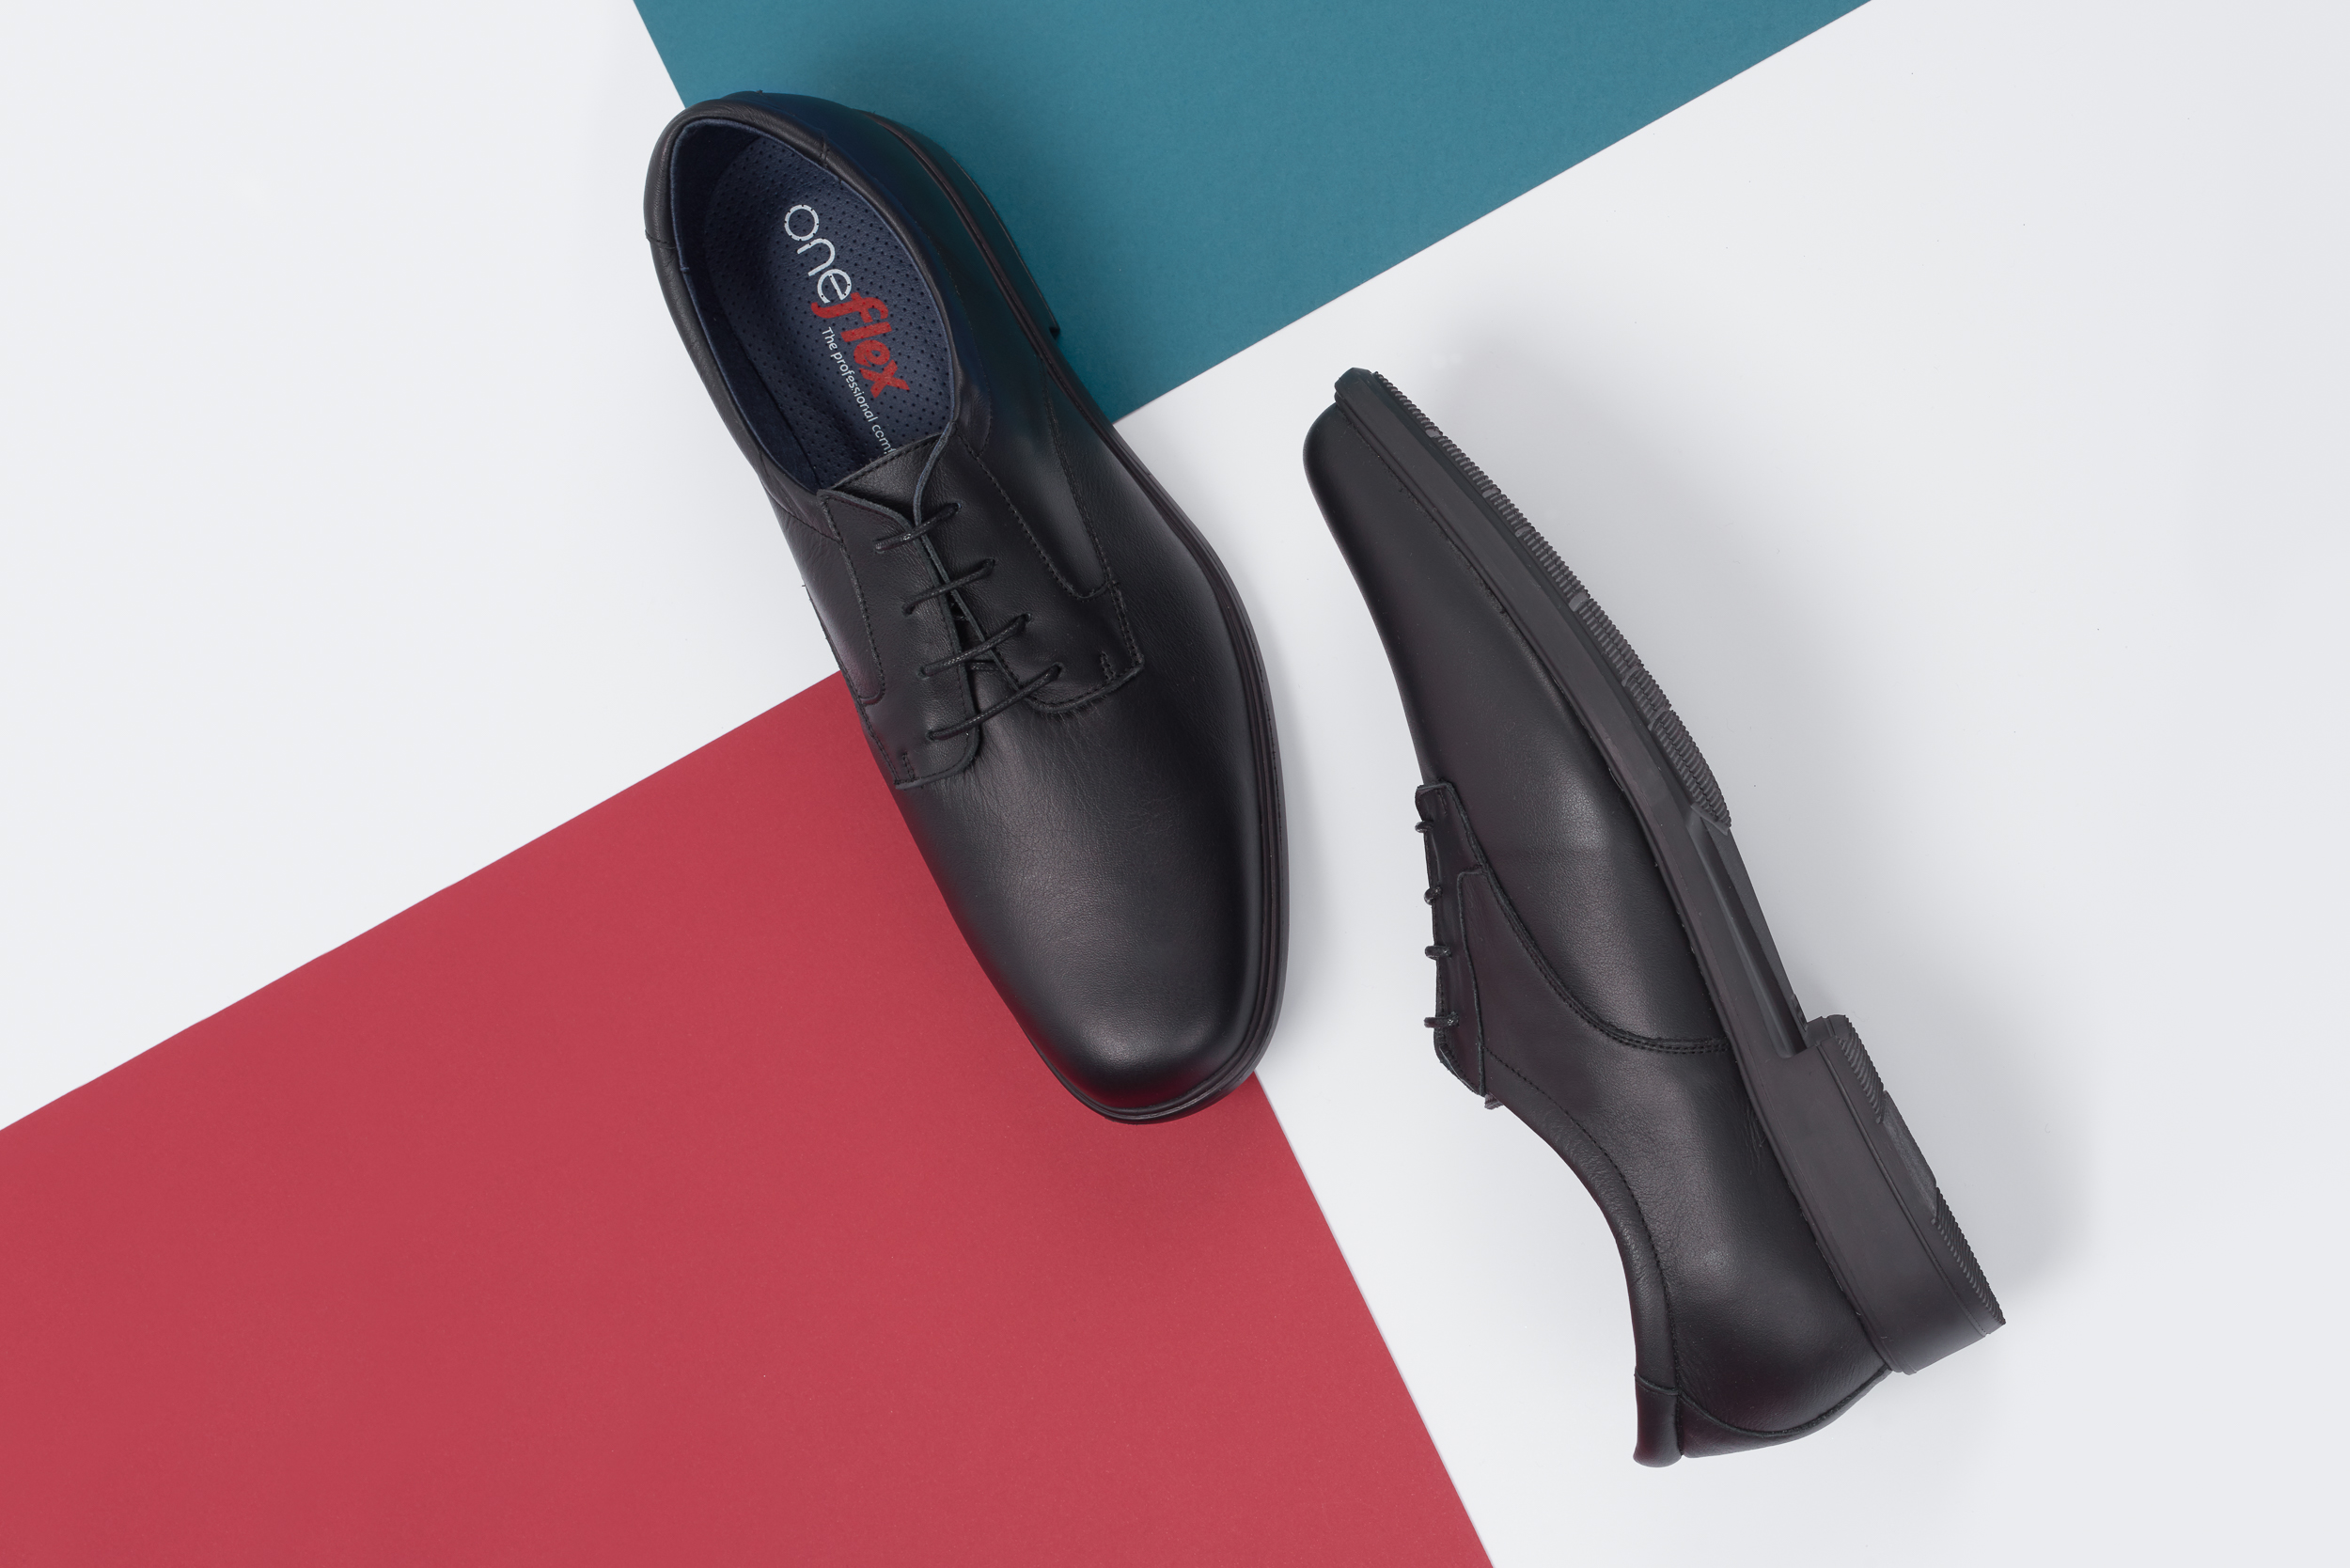 Oneflex The professional comfort Los modelos de calzado cómodo de trabajo hombre más vendidos.